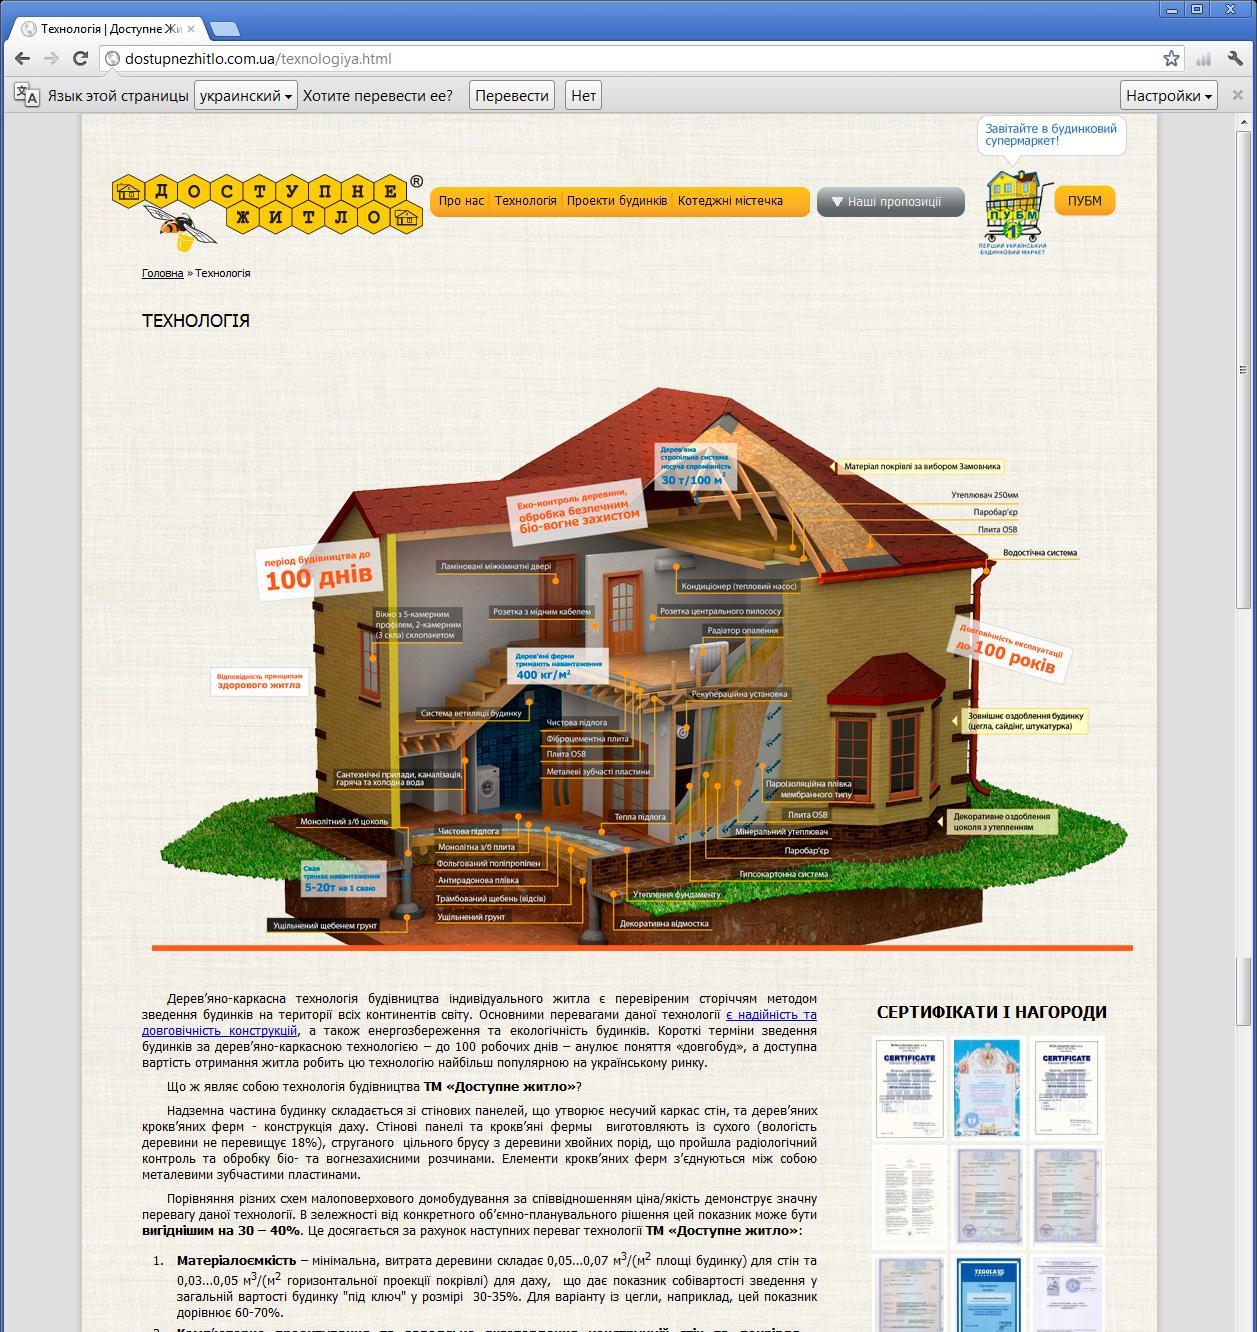 Сайт компании продвигающей на рынок Украины технологии каркасного строительства жилых домов. | проекты Evergreen 11